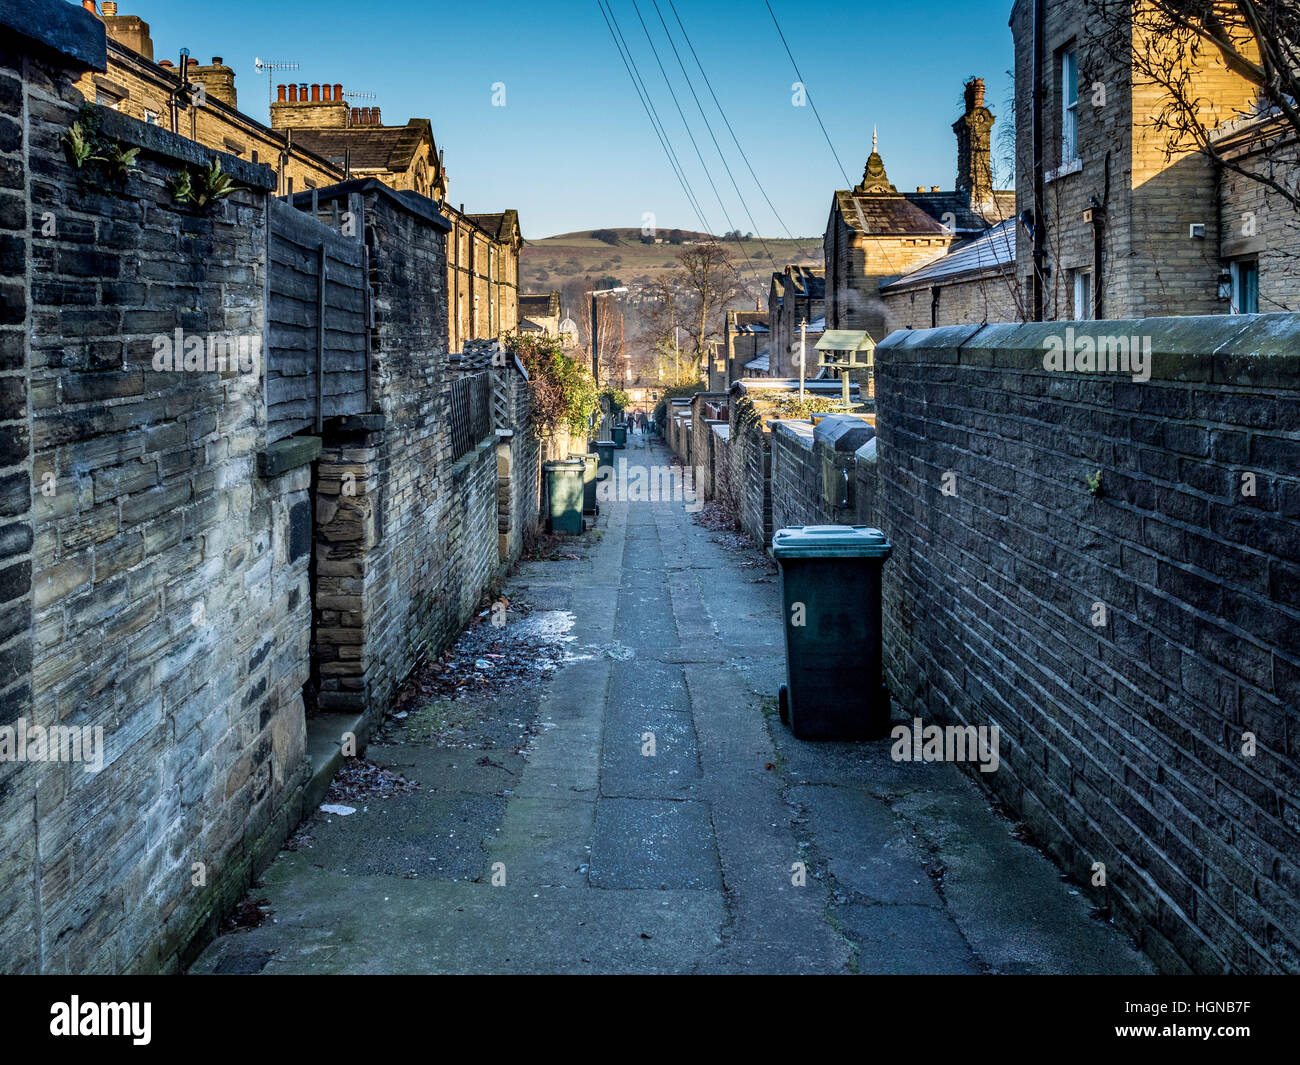 Alleyway between houses, Saltaire, West Yorkshire, UK. Stock Photo